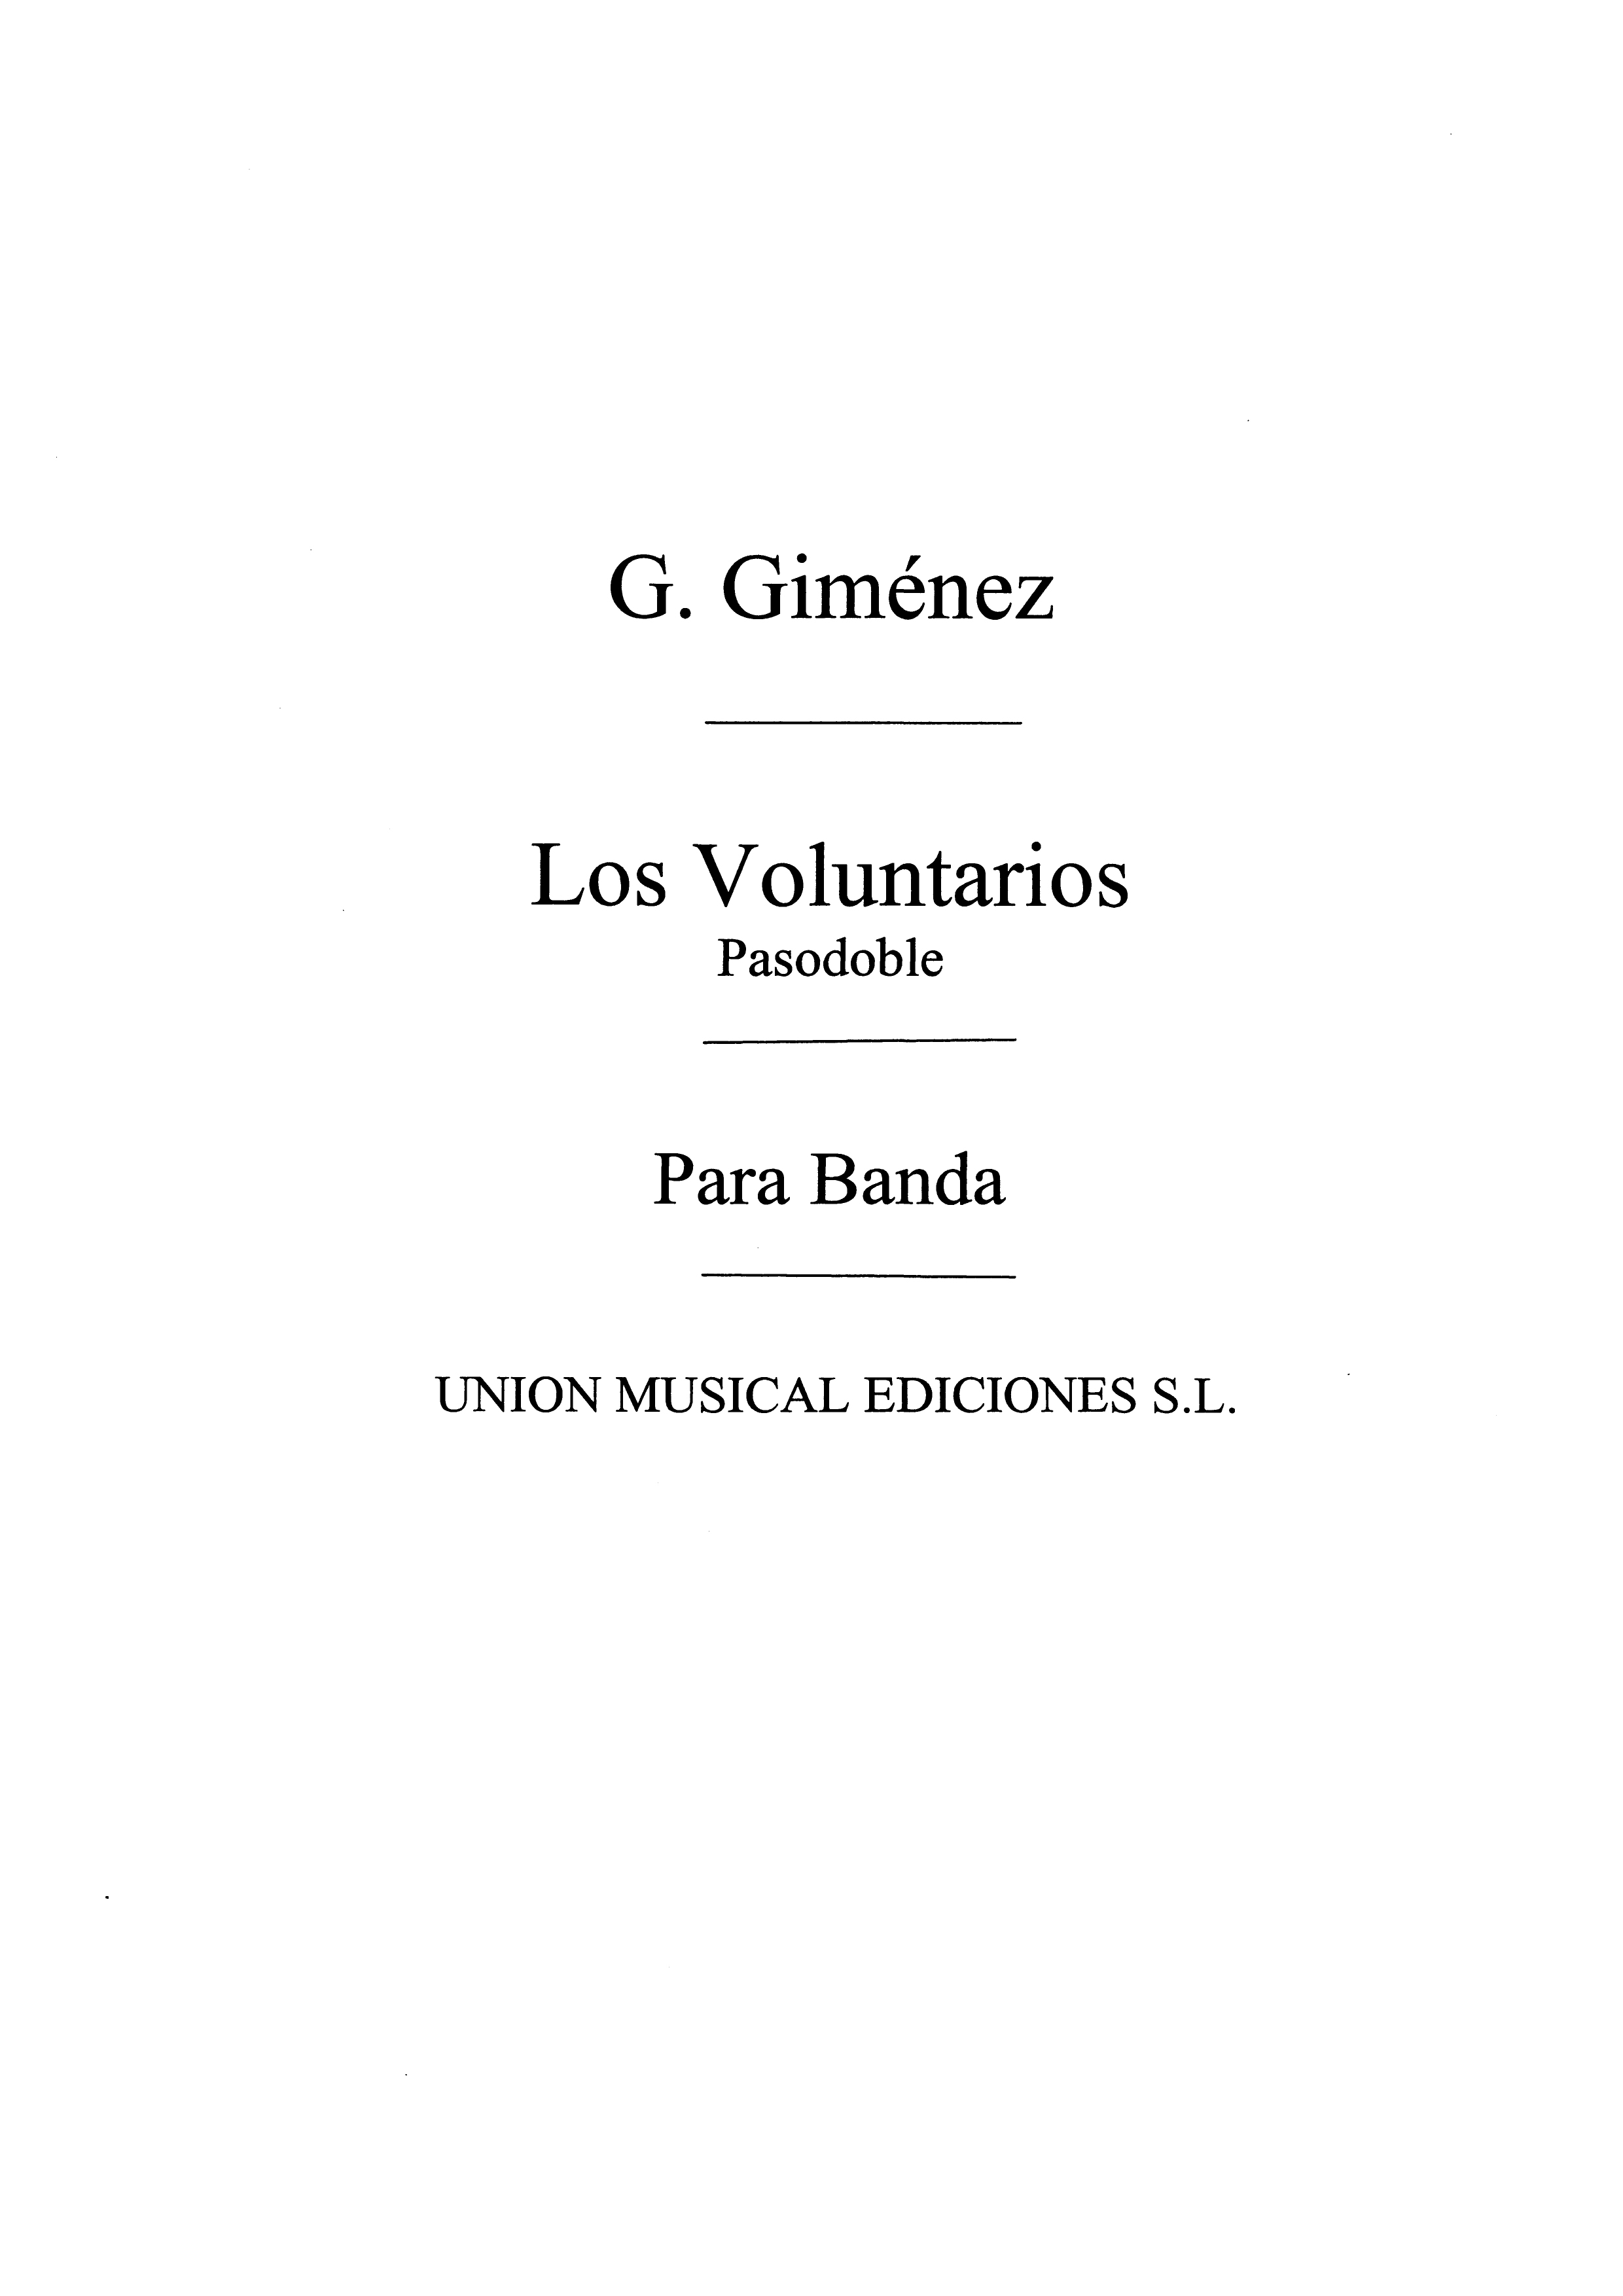 Gimenez: Los Voluntarios for Band